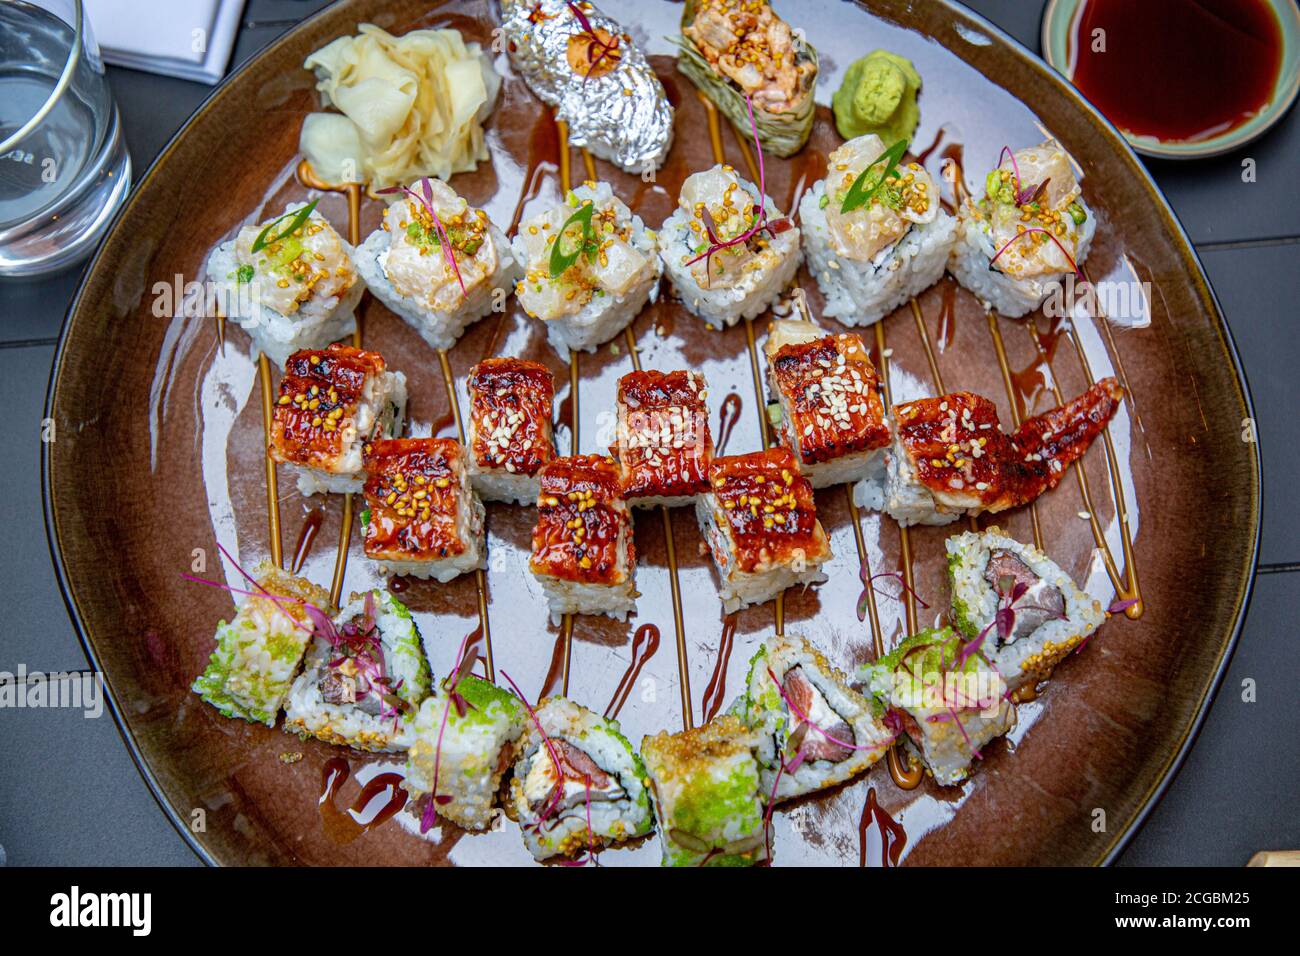 Différents petits pains japonais et sushis sur une assiette. Rouler avec de l'anguille. Banque D'Images